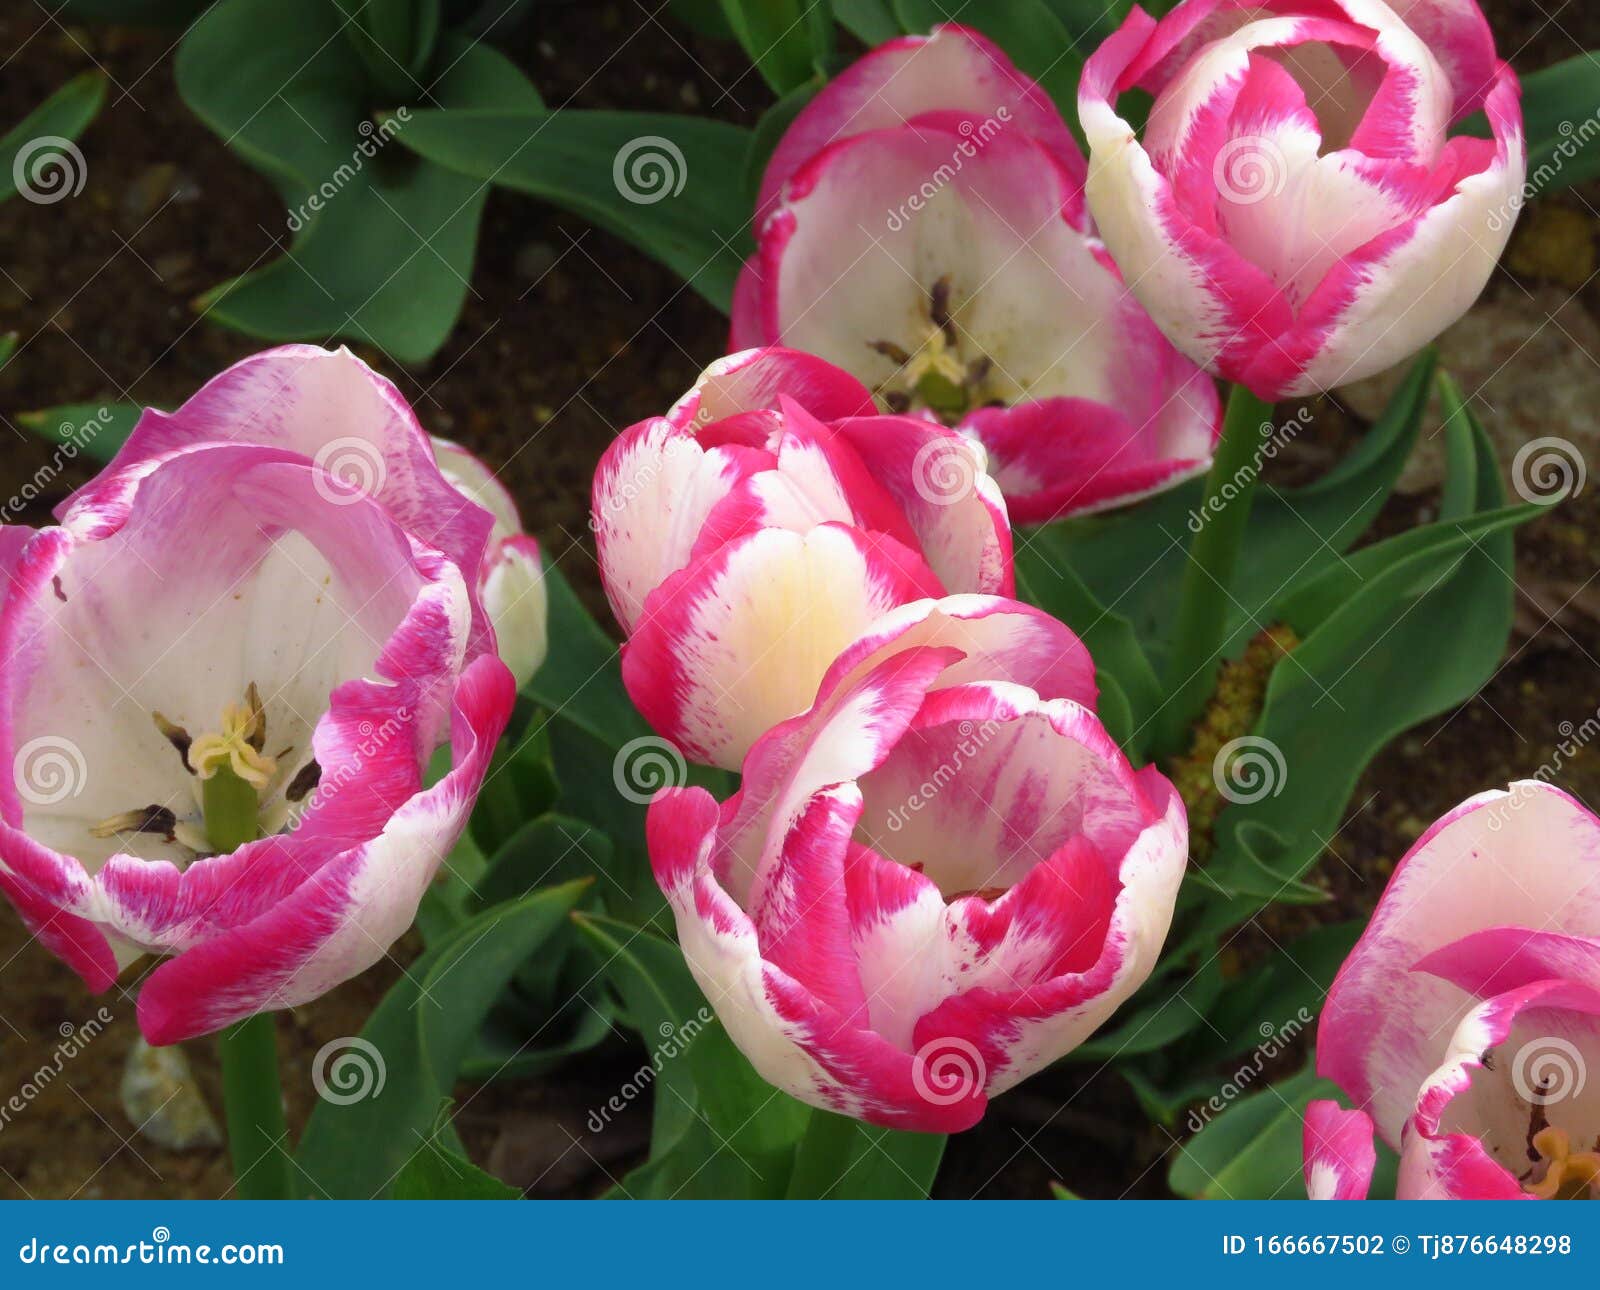 Niesamowite kwiaty brzoskwiniowe białe różowe tulipany Fioletowe tulipany w kolorach różowym i białym Tulipan Piękny kwiat wiosny w słoneczny dzień wiosny w ogródku parkowym Najlepsze zdjęcie do tapety, kwiatowego tła i karty okolicznościowej Park Emirgan Festiwal Tulip w Stambule 2019